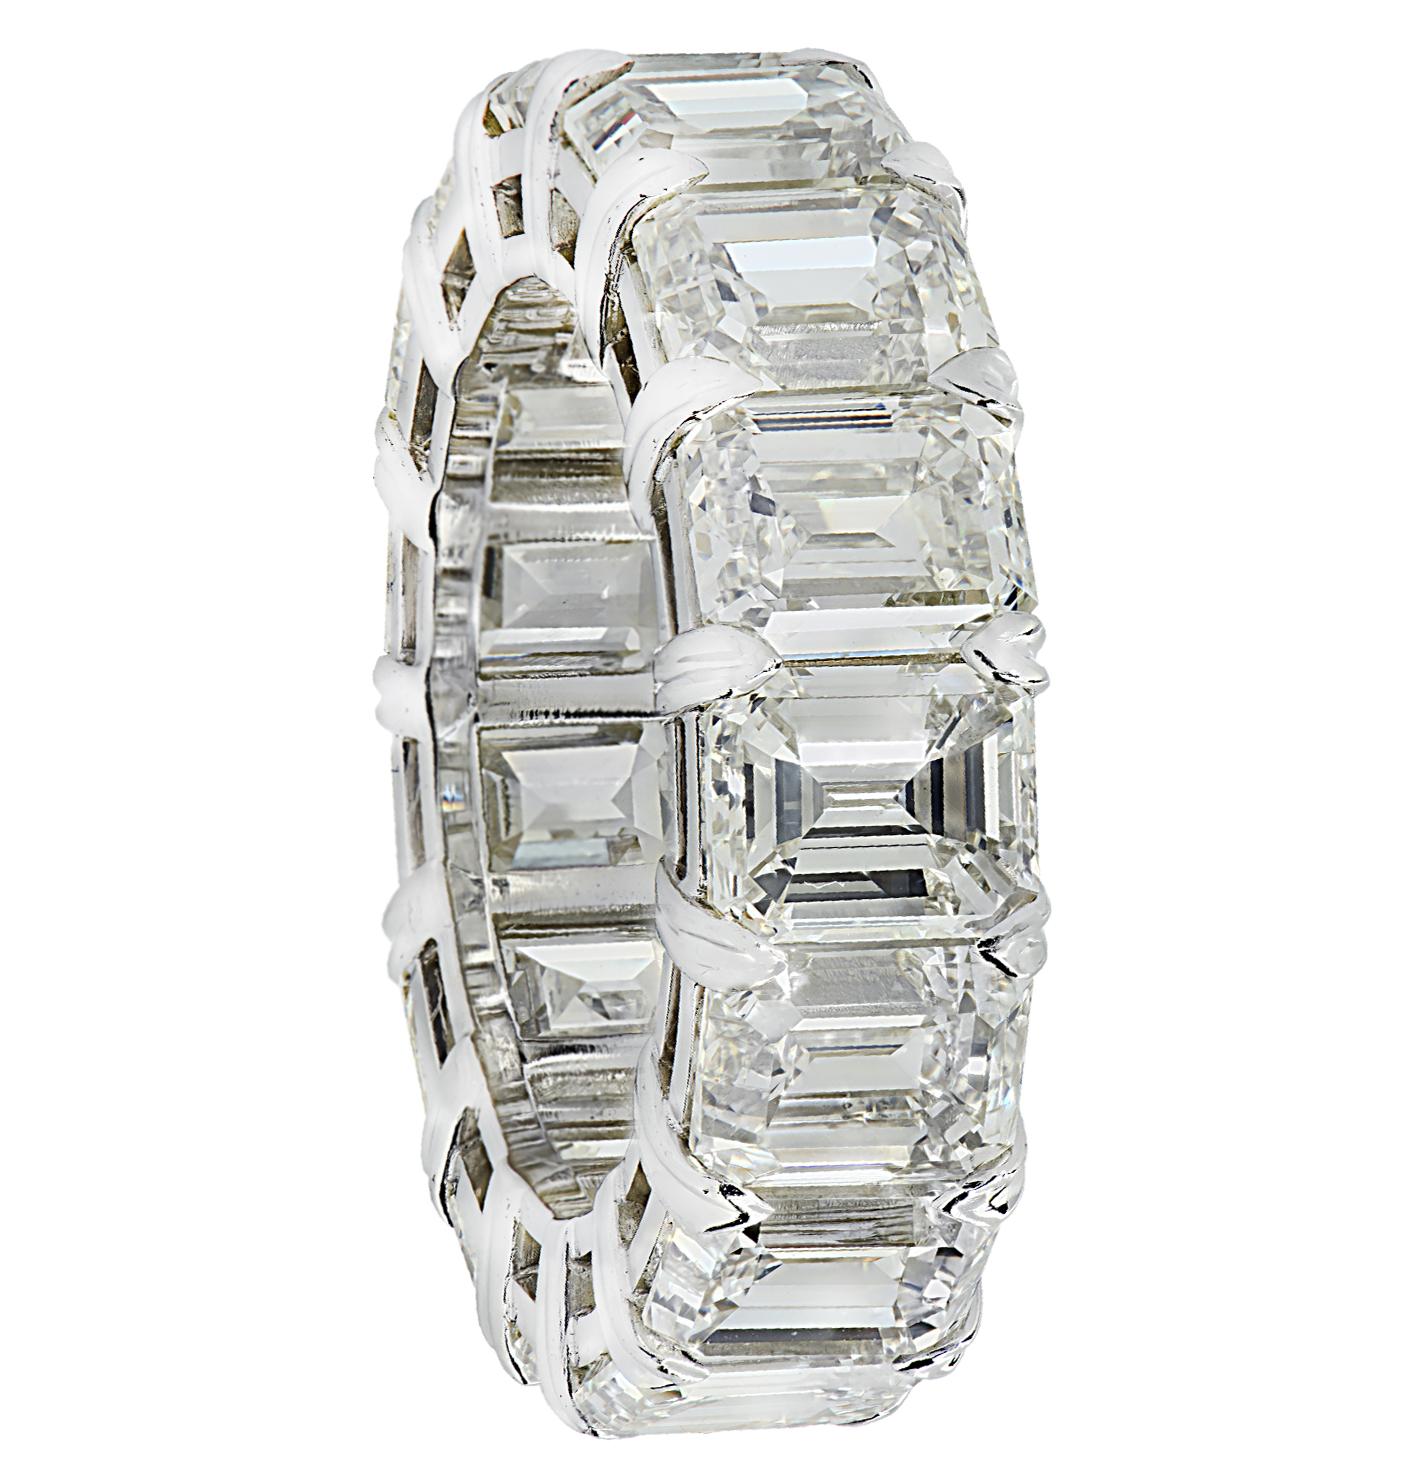 Exquisite Vivid Diamonds Smaragdschliff-Diamanten Ewigkeit Band in Platin gefertigt, präsentiert 15 atemberaubende Smaragdschliff-Diamanten mit einem Gesamtgewicht von 15,2 Karat, J Farbe, VVS1-VS Klarheit. Jeder Diamant wurde sorgfältig ausgewählt,